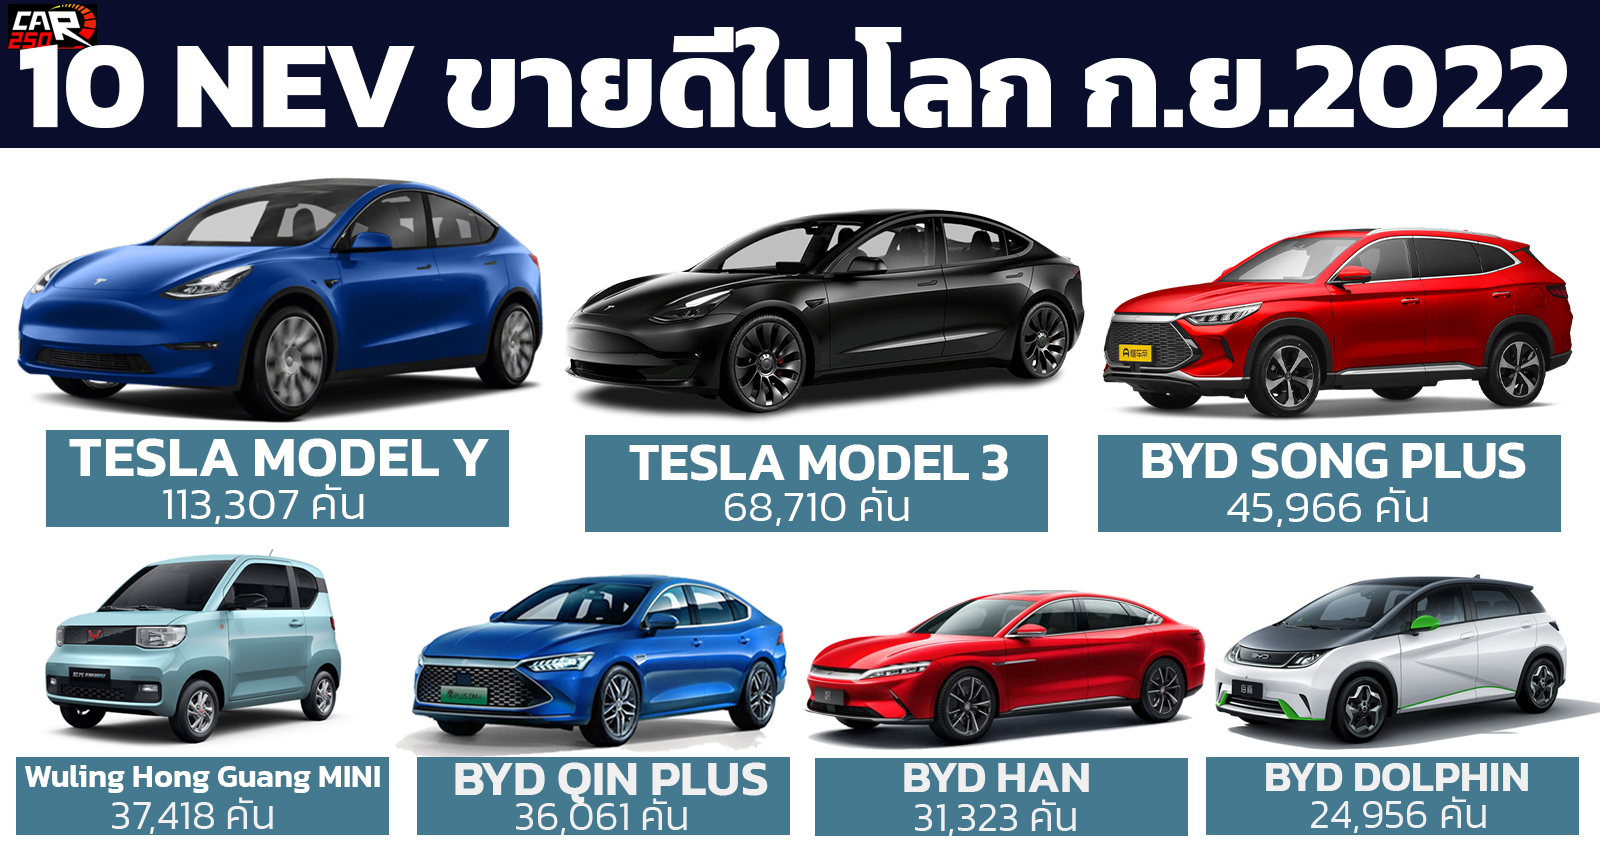 ยอดขายรถยนต์พลังงานใหม่ NEV ทั่วโลก กันยายน 2022 รวม 1,040,289 คัน